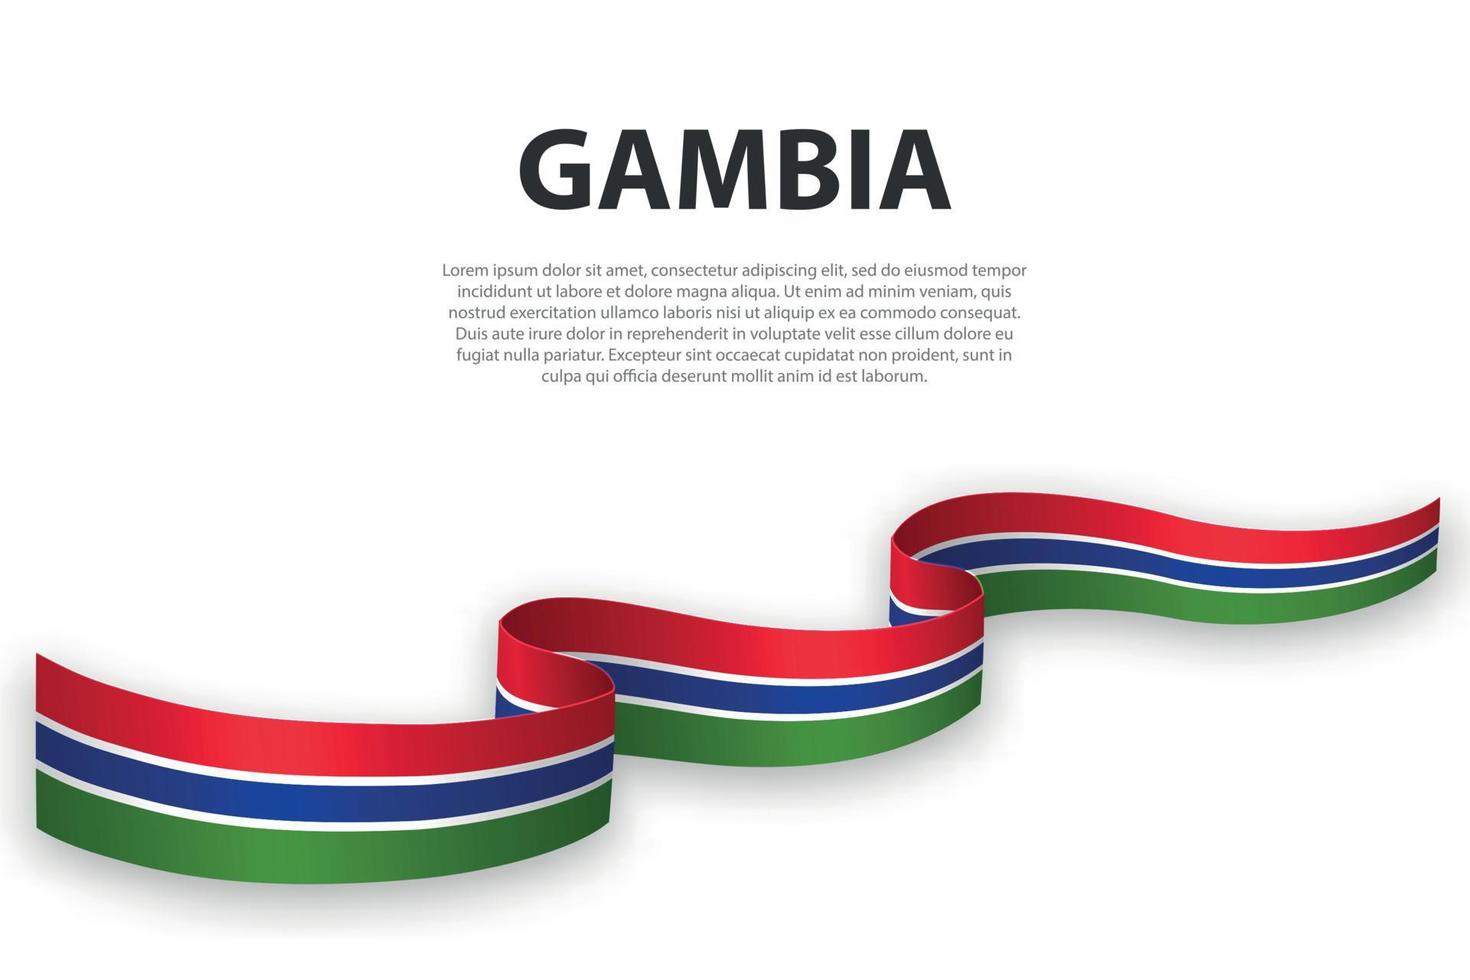 schwenkendes band oder banner mit gambia-flagge vektor